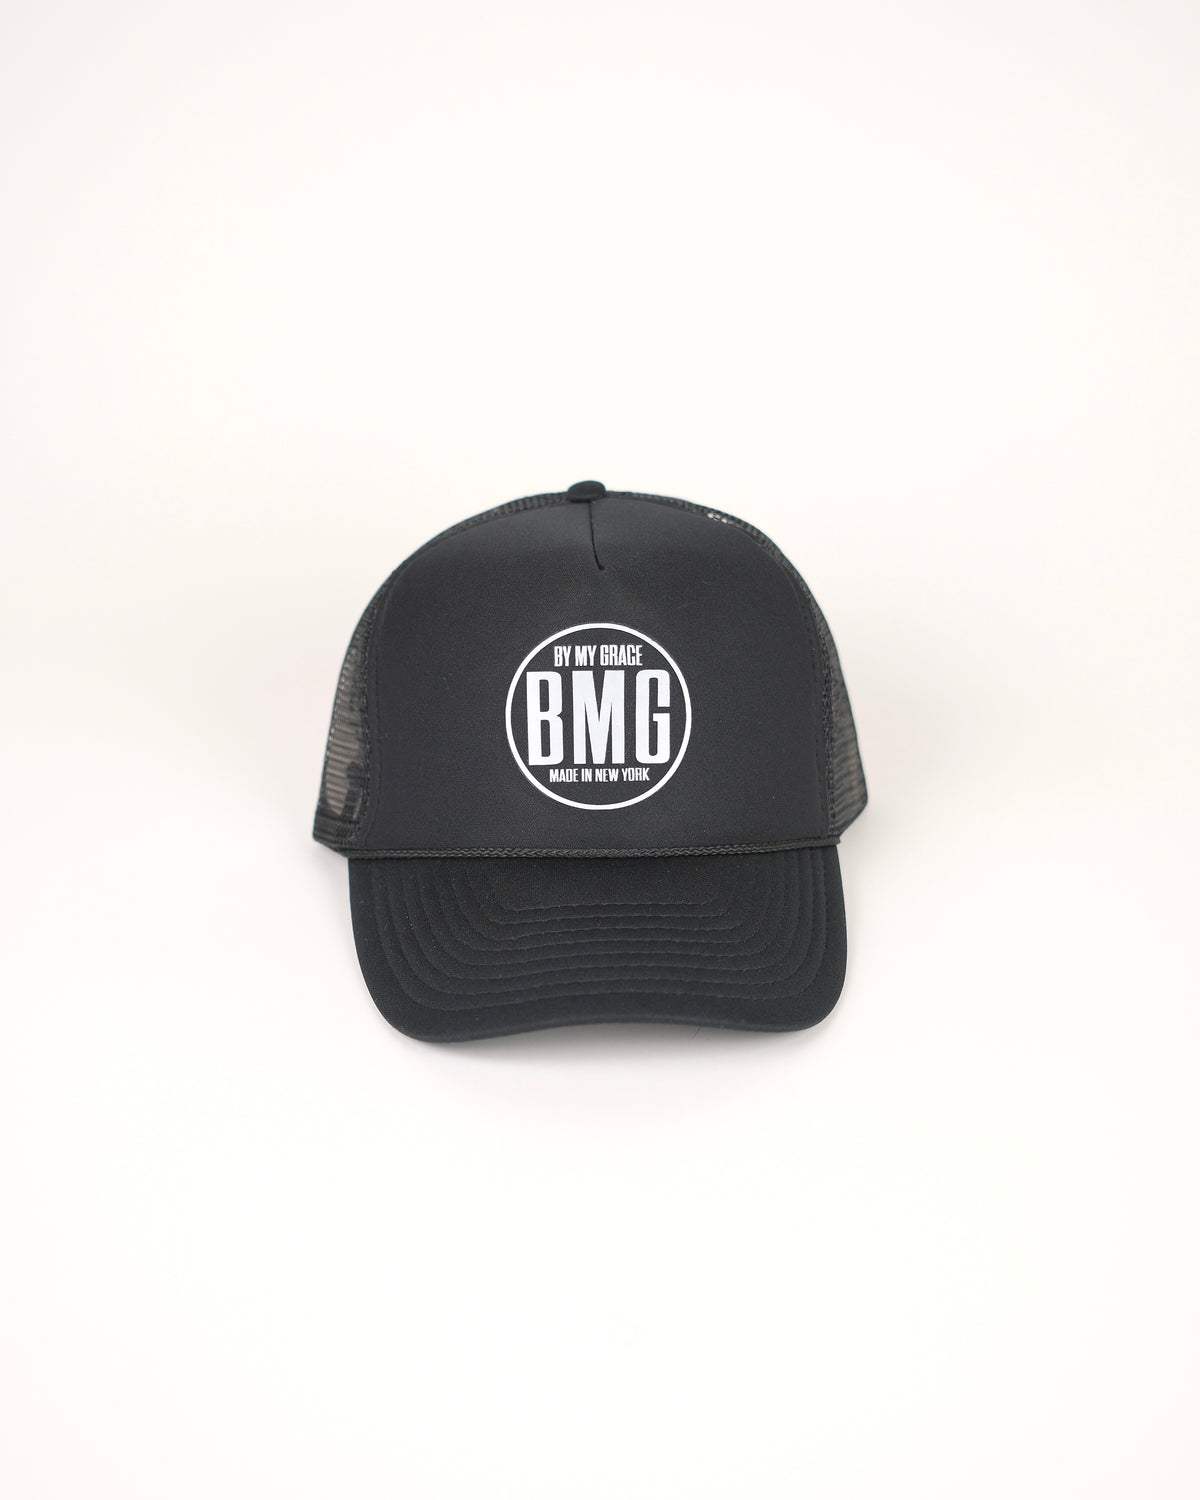 BMG Classic Trucker Hat